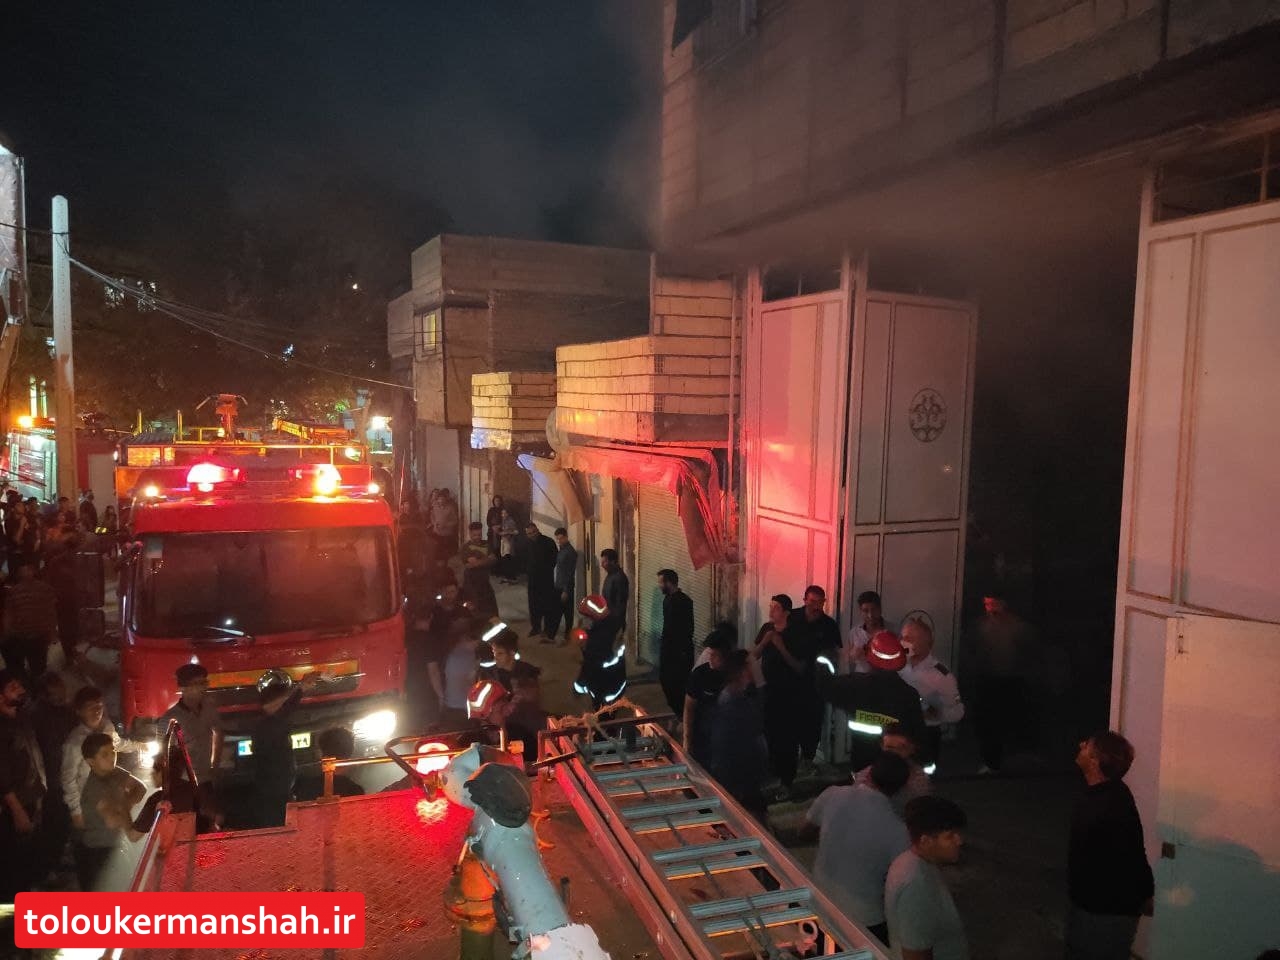 حریق منزل مسکونی در جعفرآباد کرمانشاه و نجات دو نفر از میان شعله های آتش